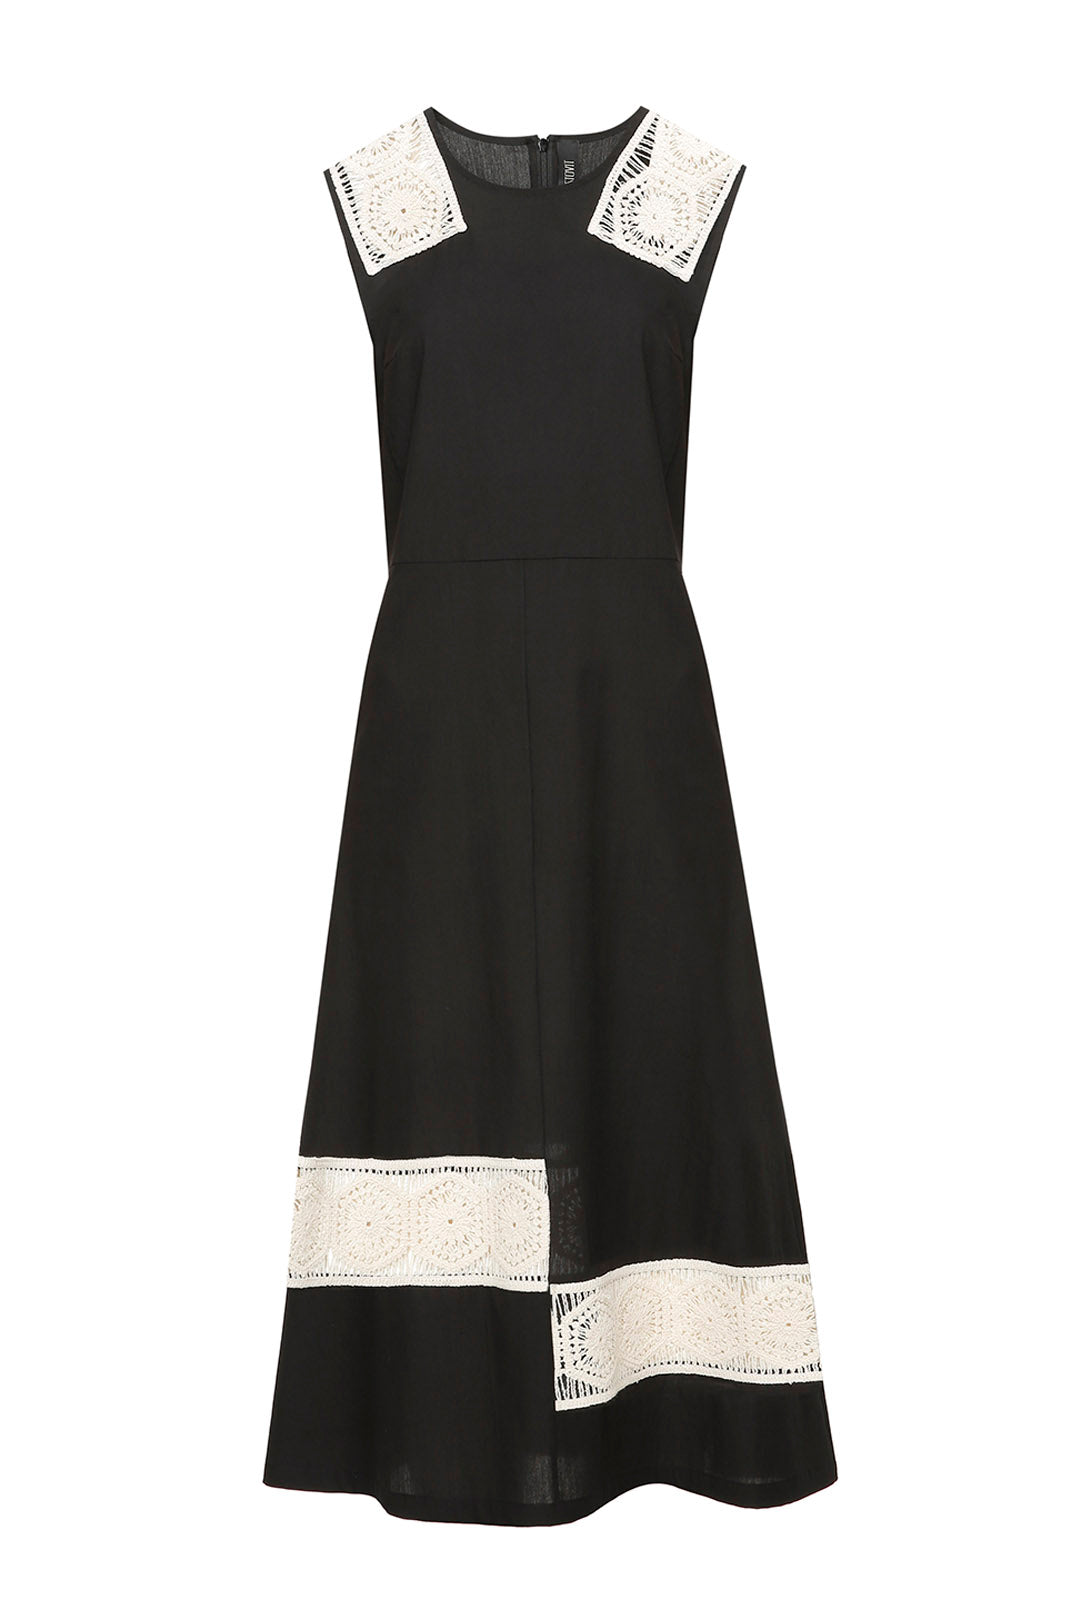 Black cotton dress with milk lace details